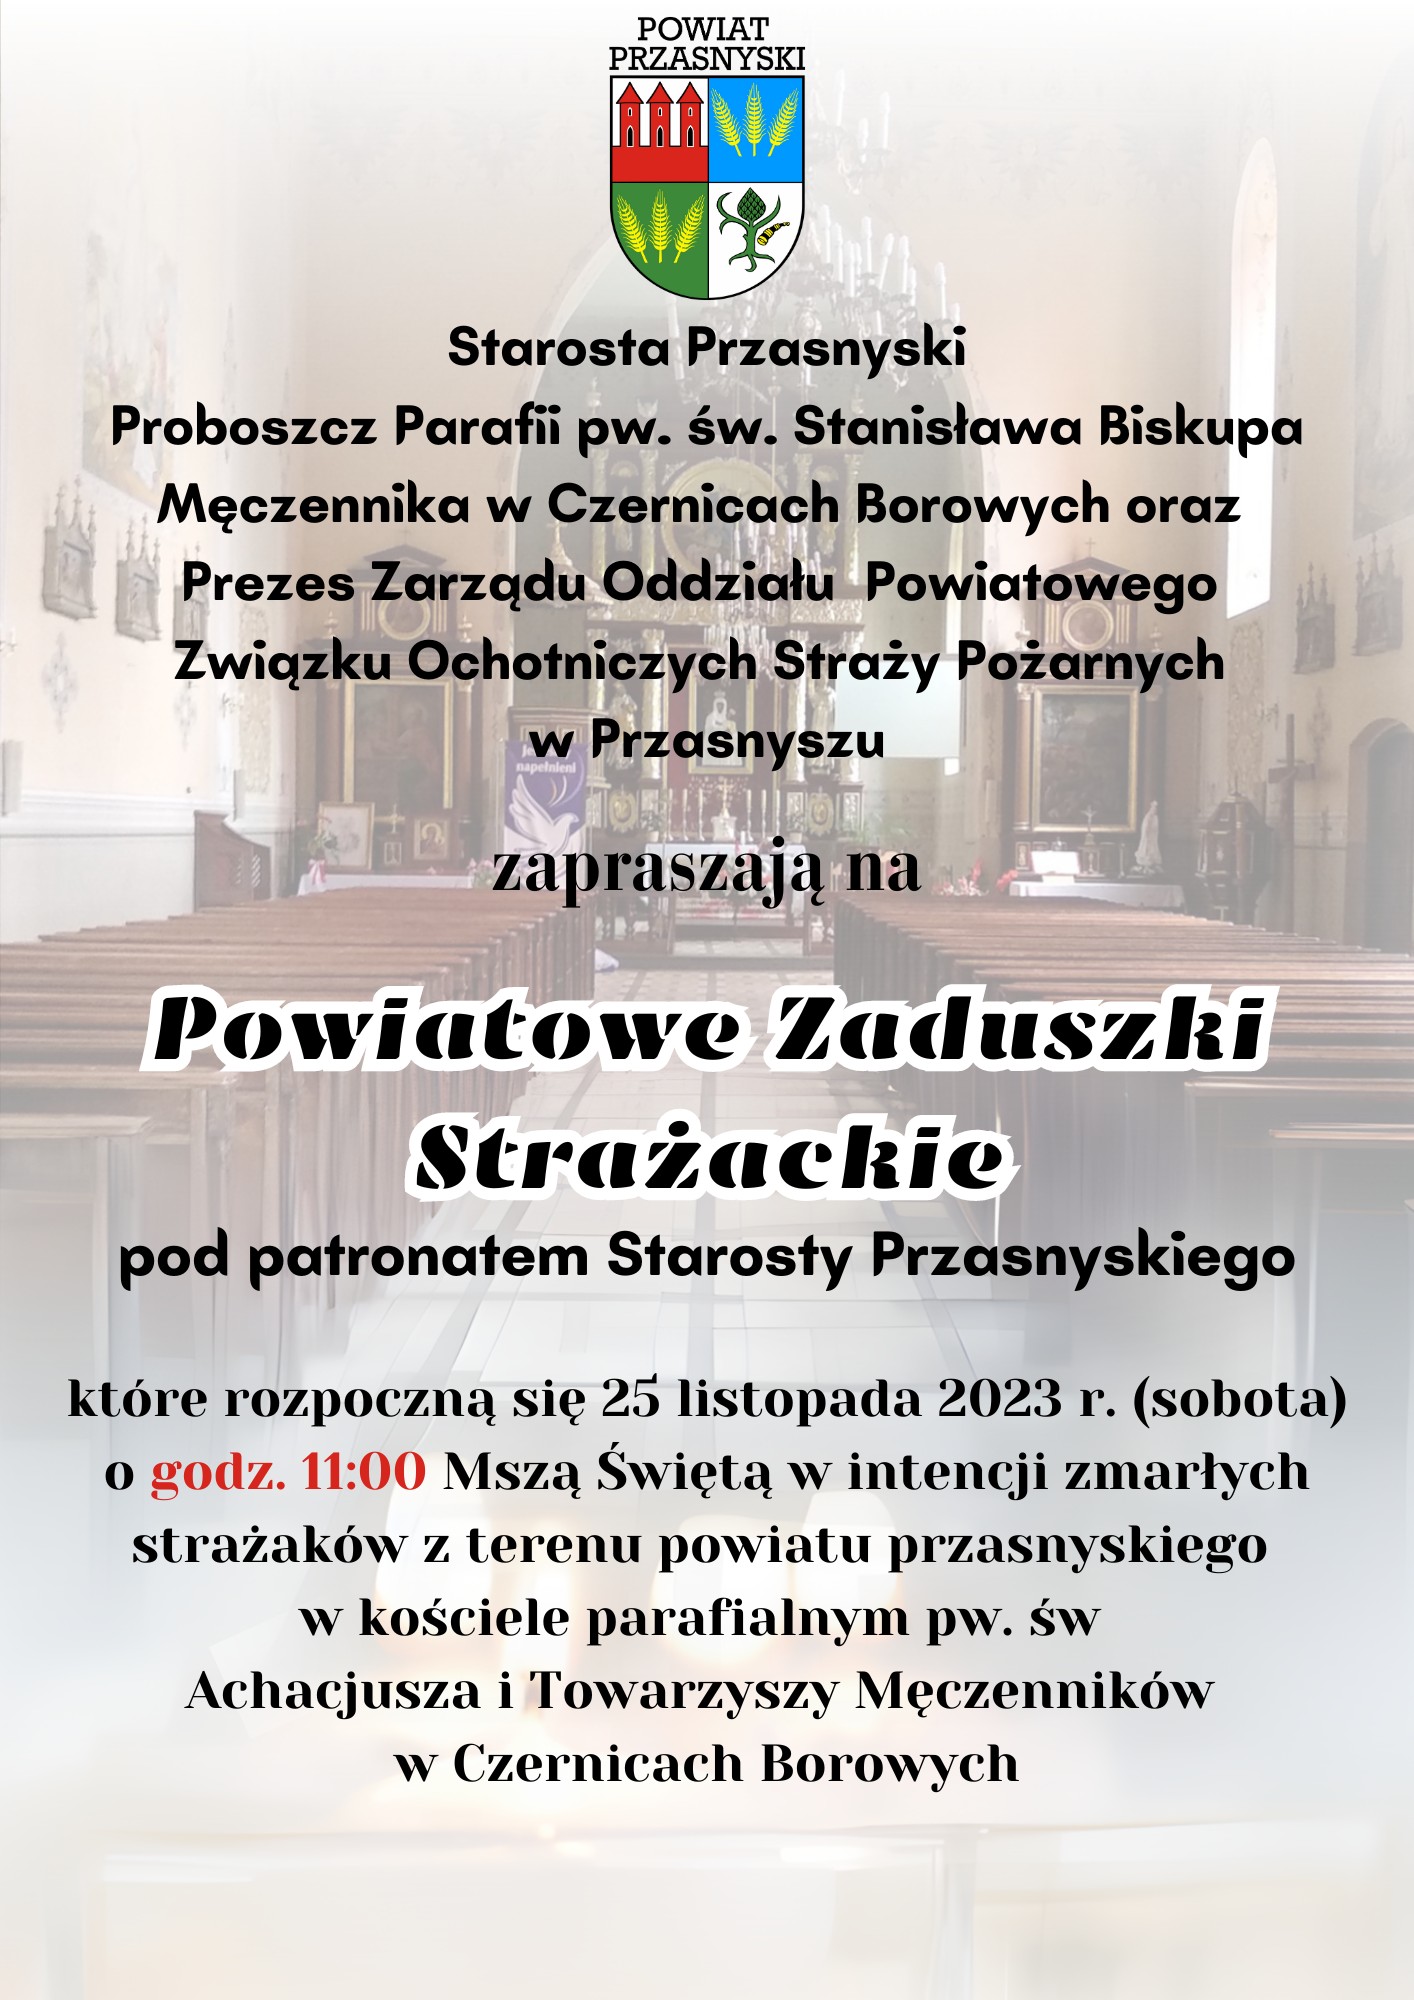 Plakat informujący o Powiatowych Zaduszkach Strażackich. Treść w artykule.